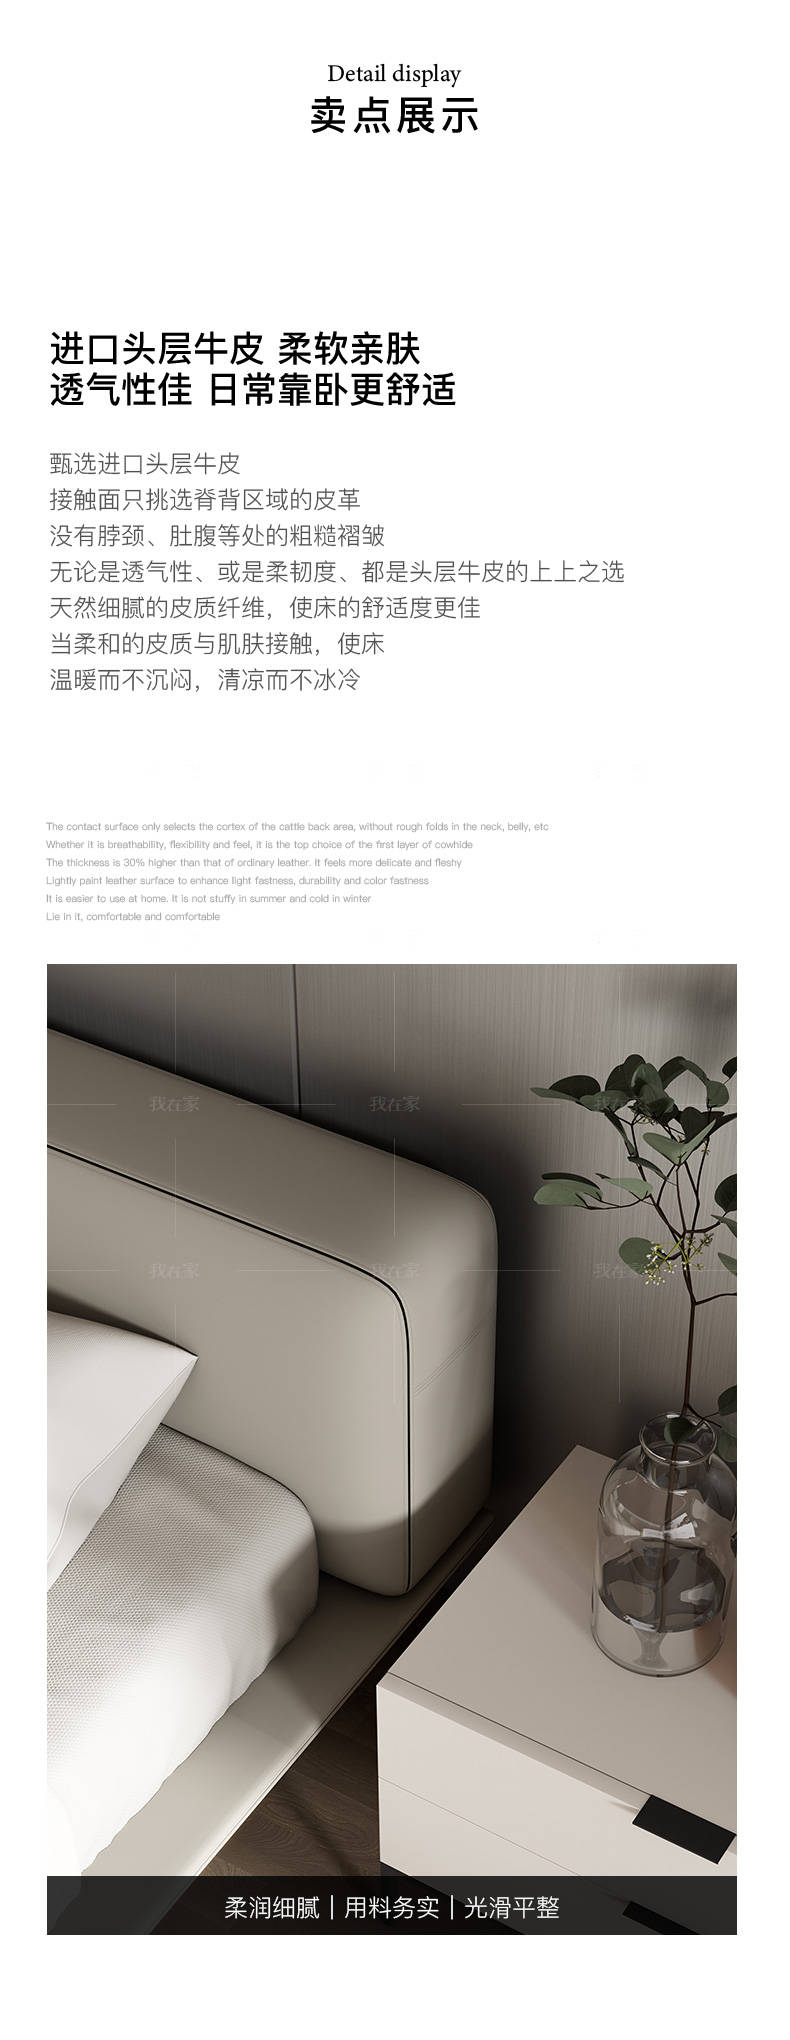 意式极简风格悬浮双人床的家具详细介绍